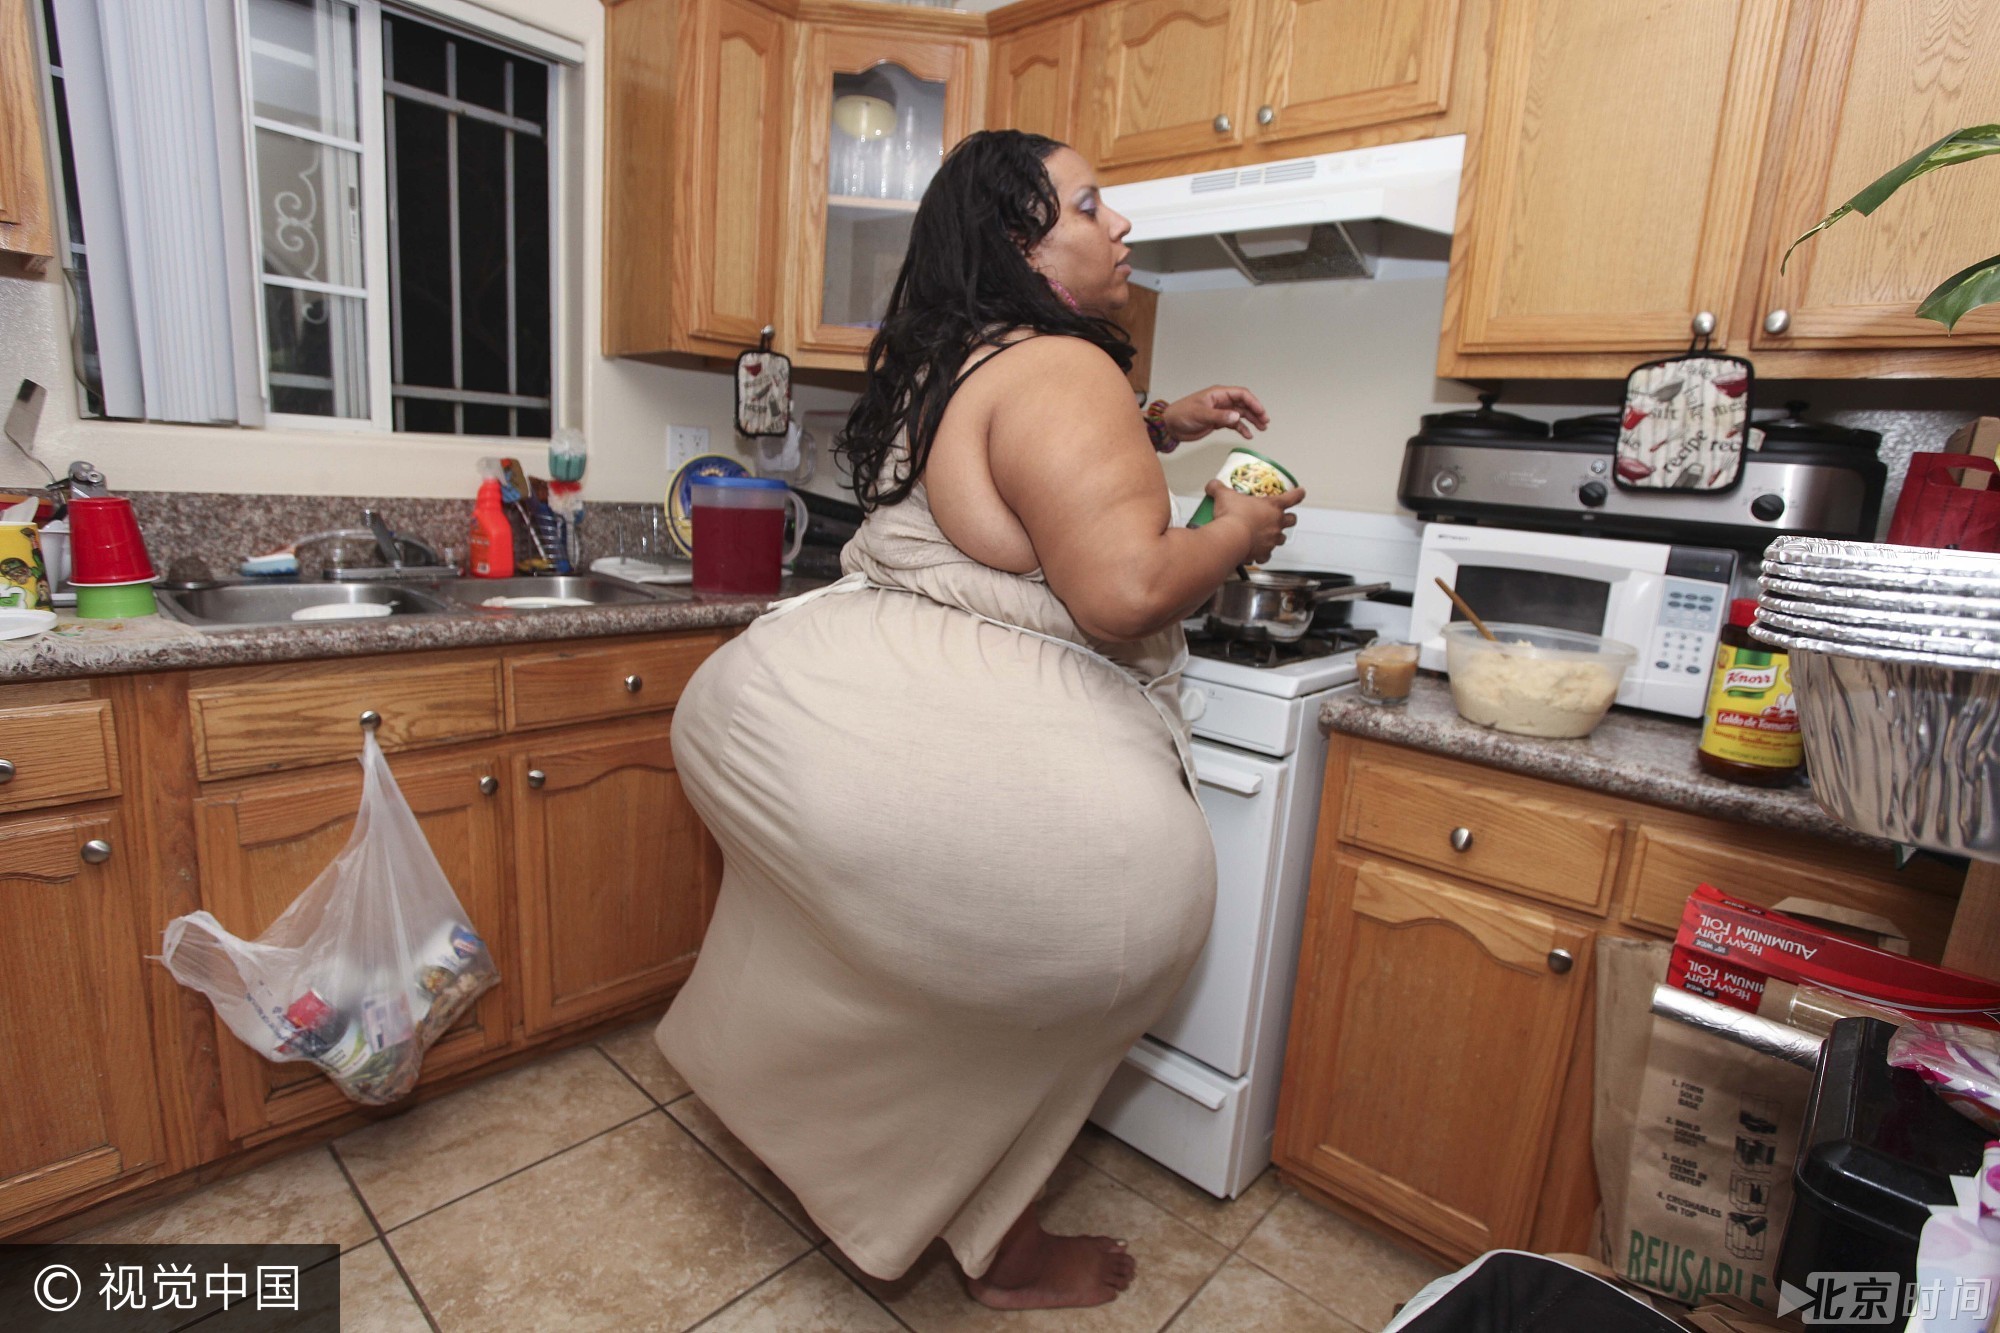 2013年，美国洛杉矶，迈克尔斯·鲁菲内利是世界上拥有最大臀部的女子，现年40岁的她是4个孩子的妈，其臀围达8英尺（约合2.4米）。